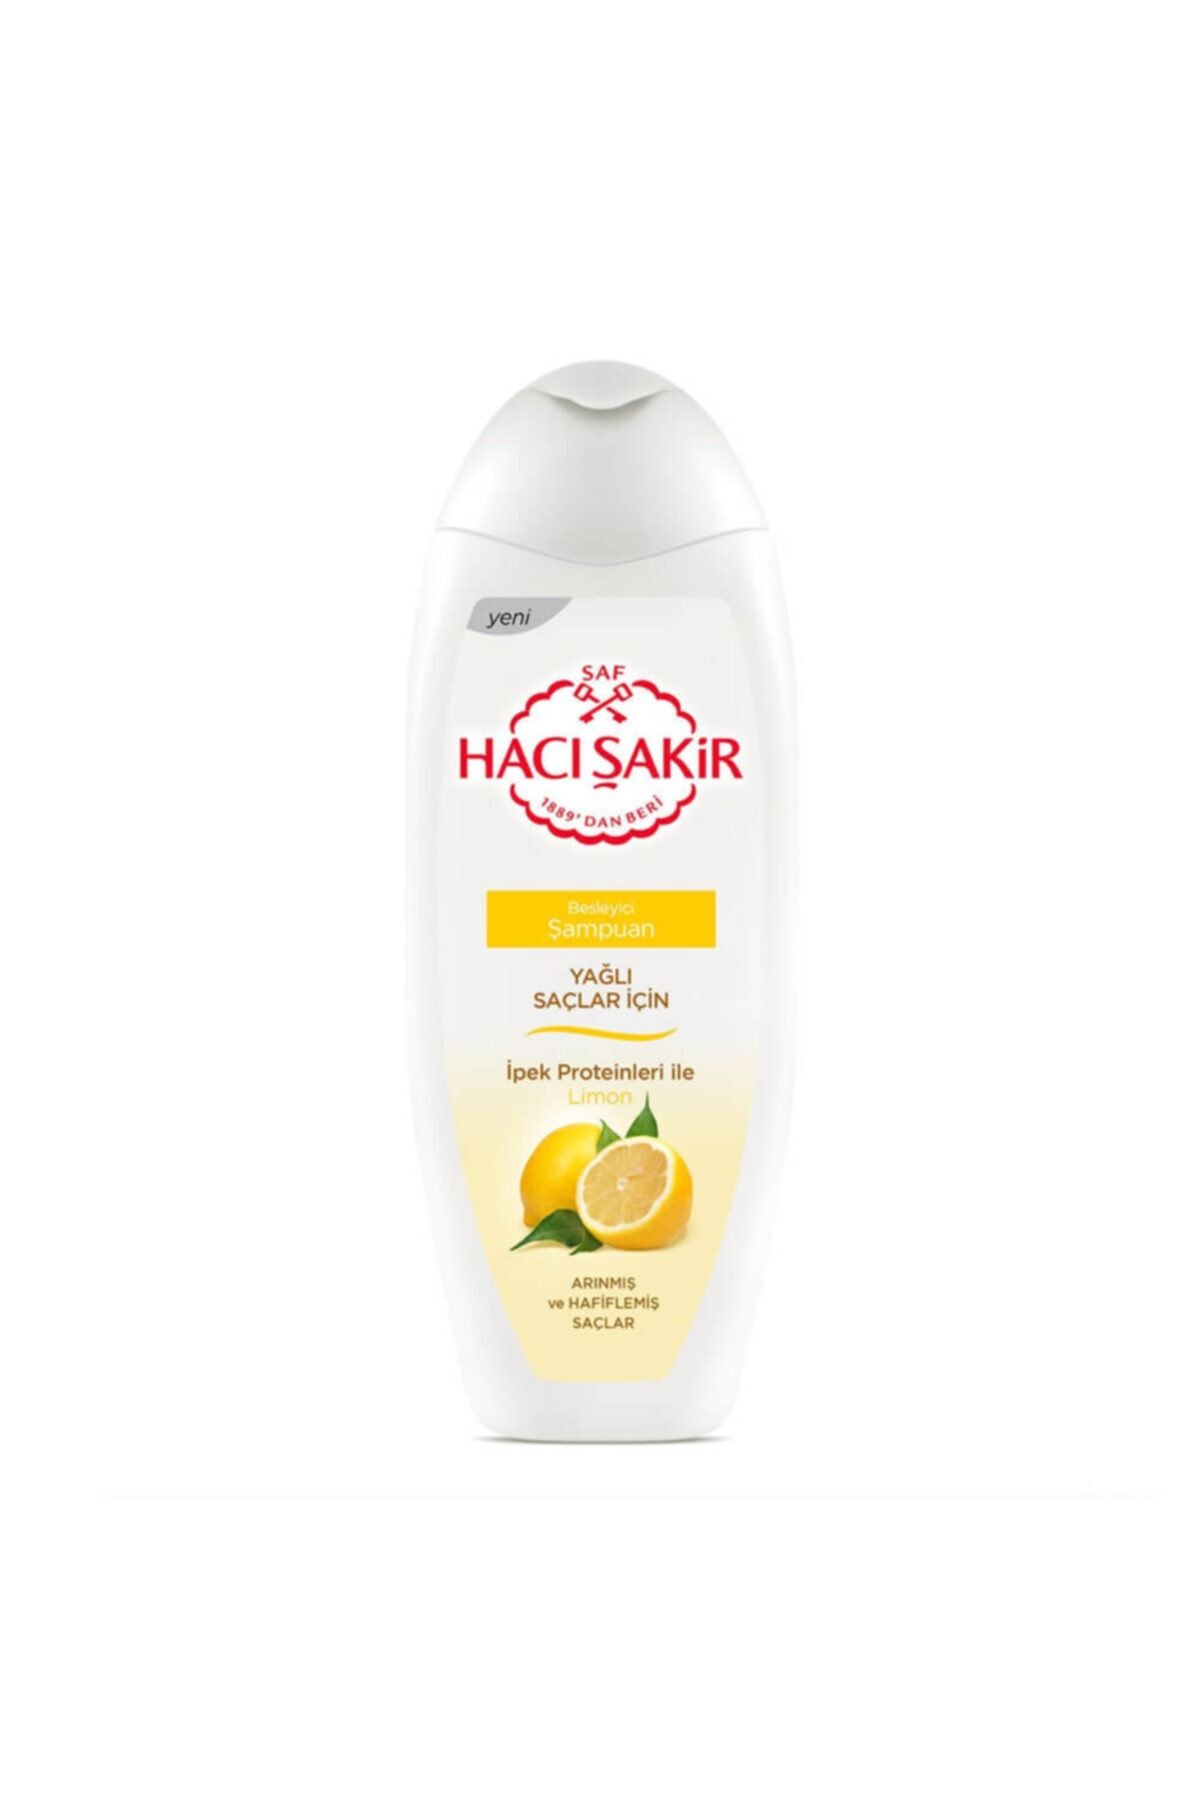 Hacı Şakir Yağlı Saçlar için Limon Besleyici Şampuan 500 ml